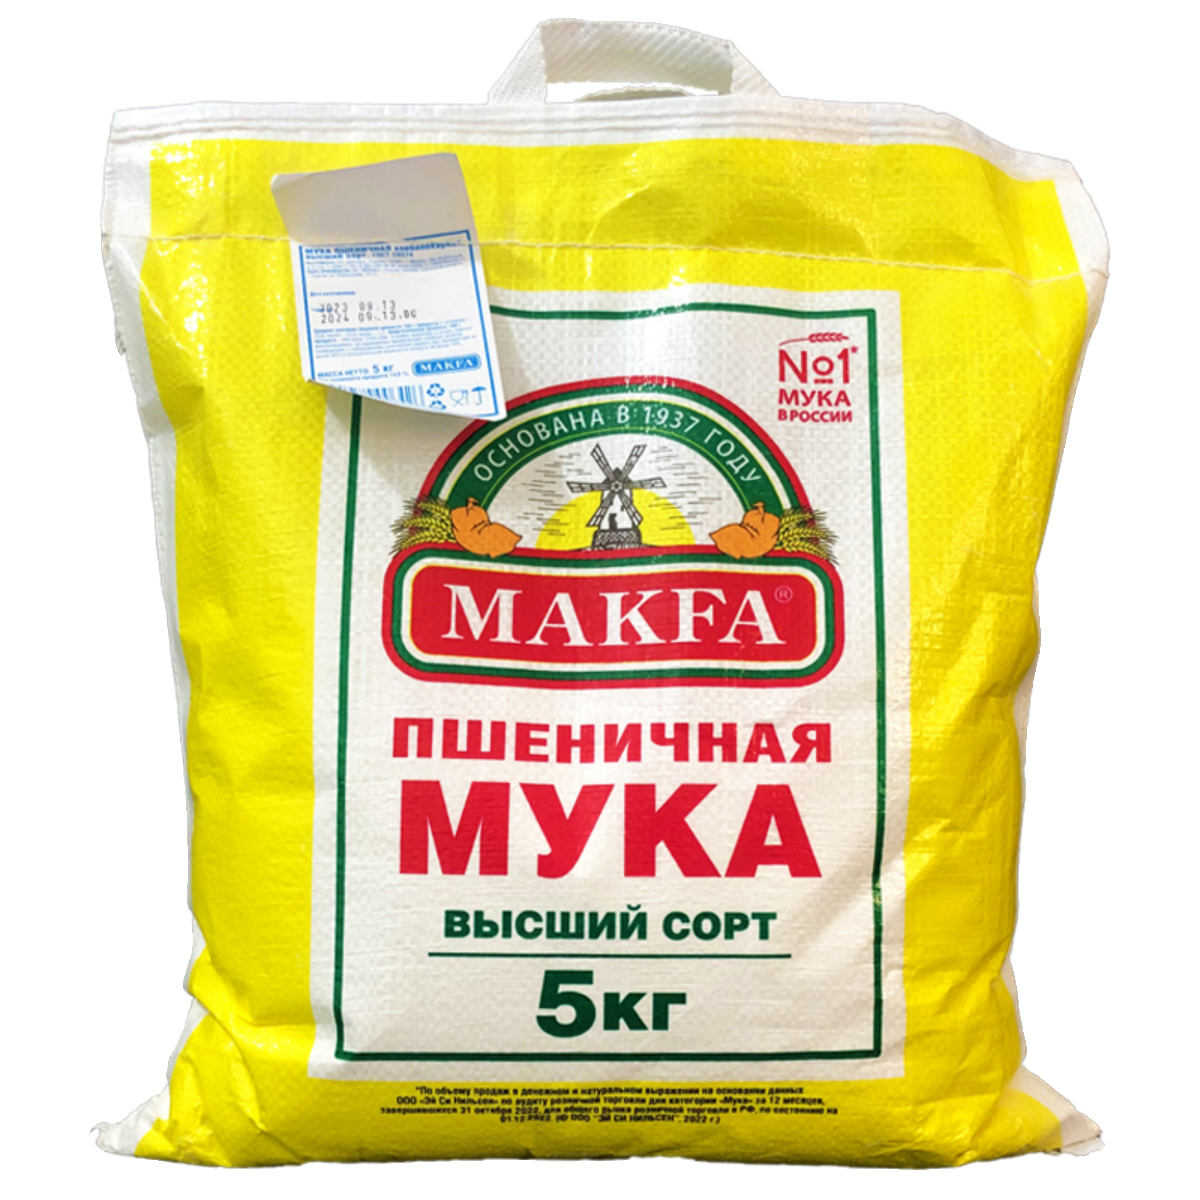 10斤装俄罗斯原装进口马克发高筋面粉小麦面粉通用面粉袋装5kg/袋